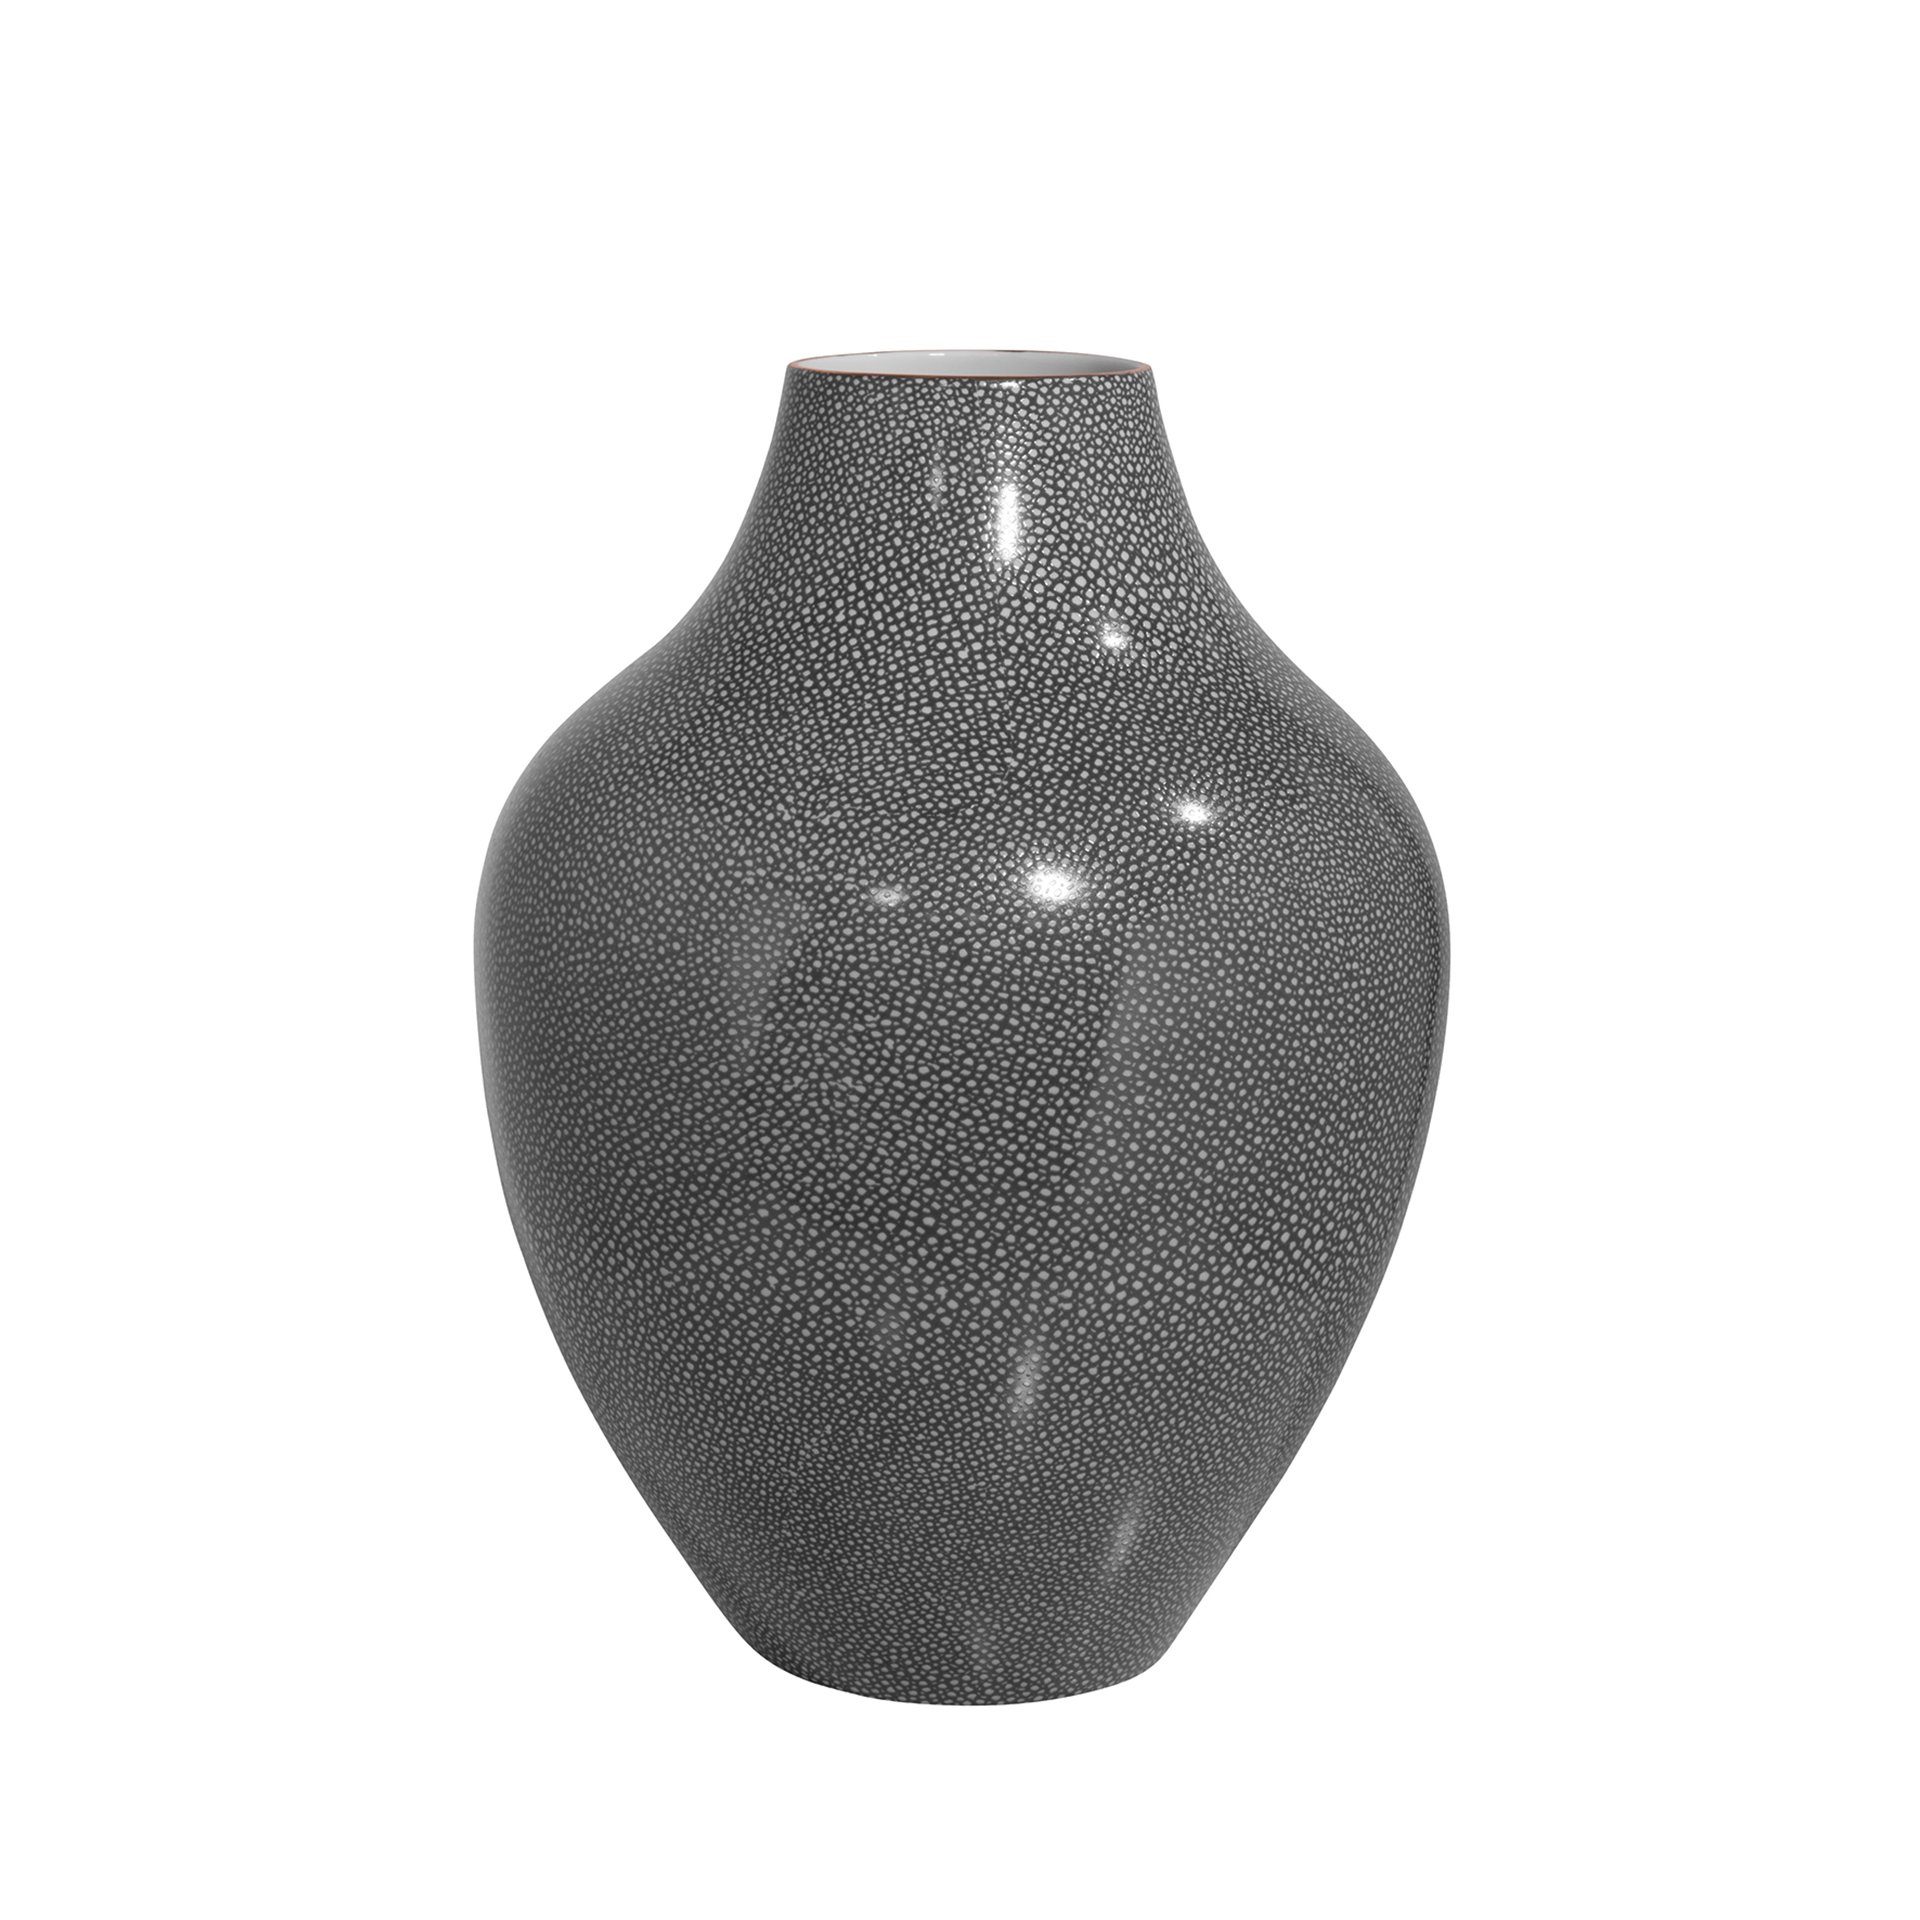 Fink Dekovase Vase GLORIA - grau - Porzellan - H.41cm x Ø 30cm,  Handbemalter goldfarbener Rand - Durchmesser Öffnung ca. 10cm